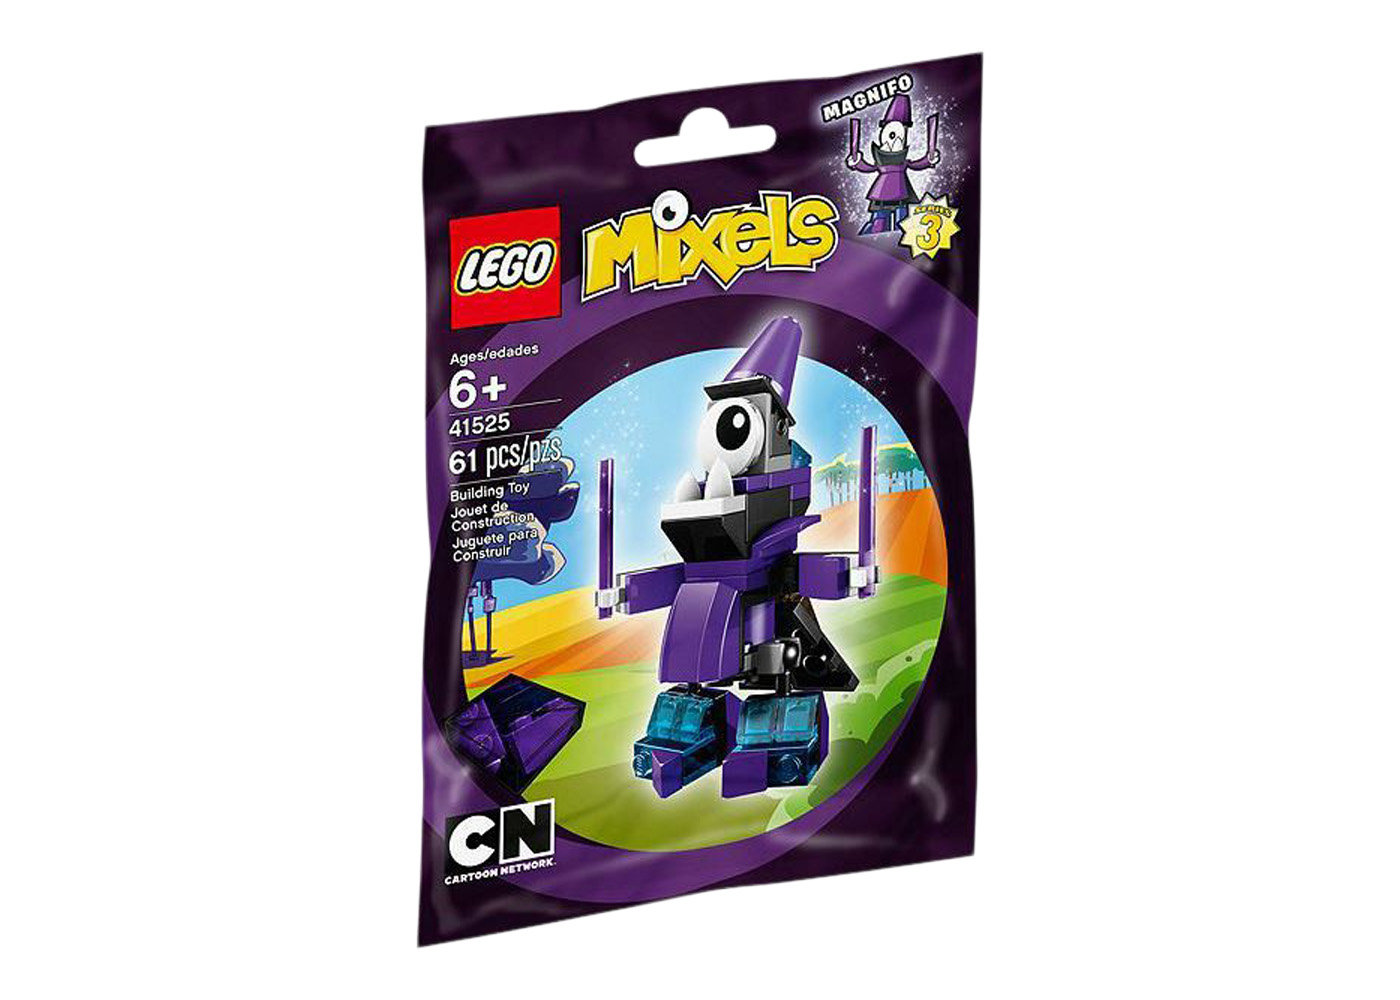 LEGO Mixels Flain Set 41500 - CN